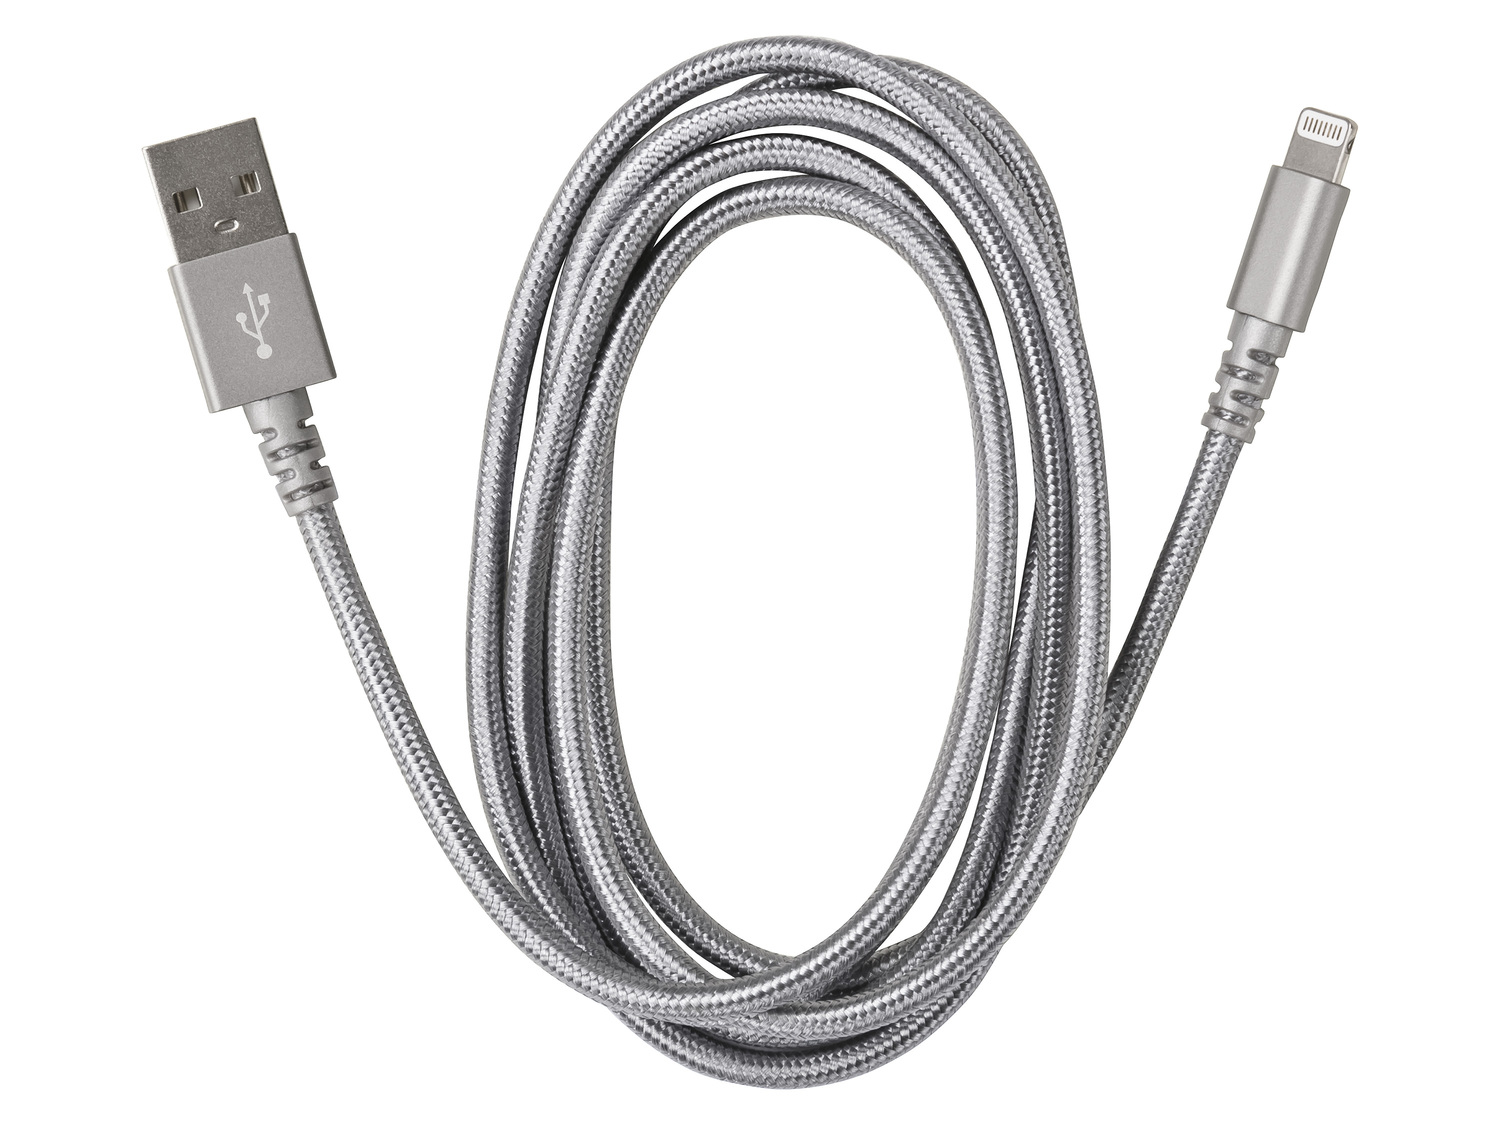 Kabel do ładowania i przenoszenia danych , cena 17,99 PLN 
- do wyboru: kabel ...